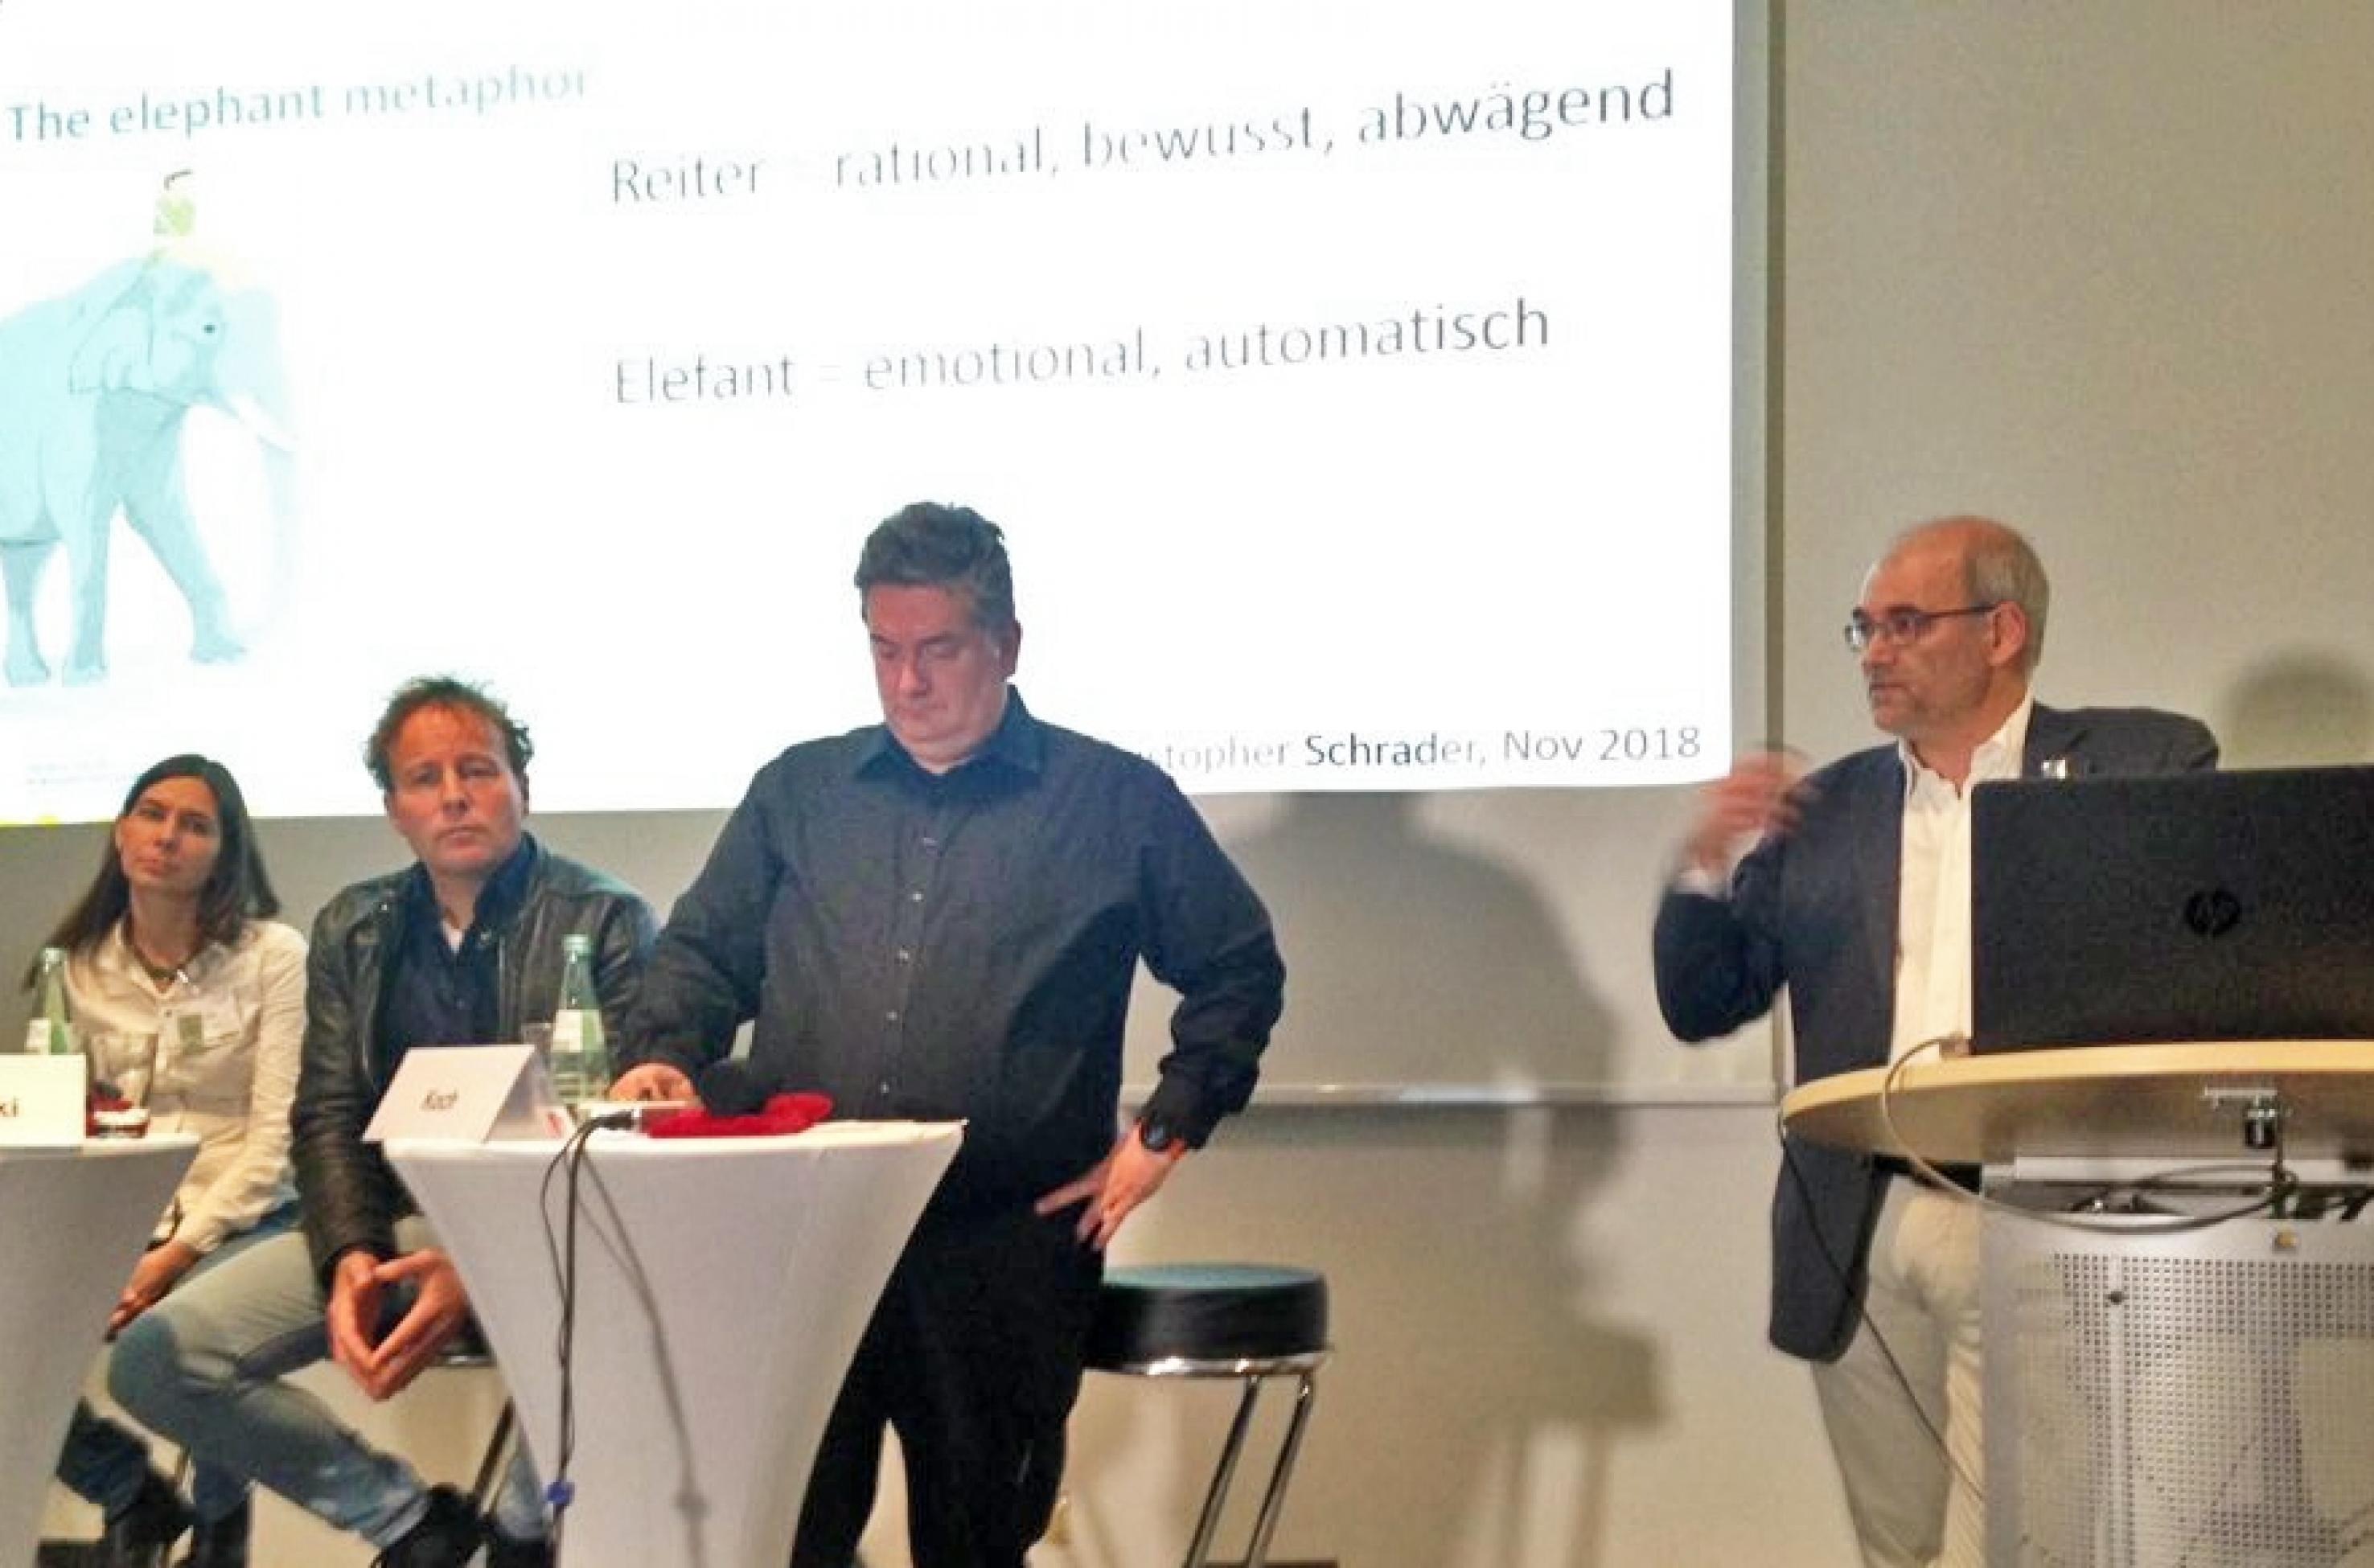 Foto von der Diskussionsveranstaltung in Bremen. Personen von links: Imke Hoppe (sitzend), Axel Bojanowski (sitzend), Moderator Christoph Koch (stehend), Christopher Schrader (stehend).